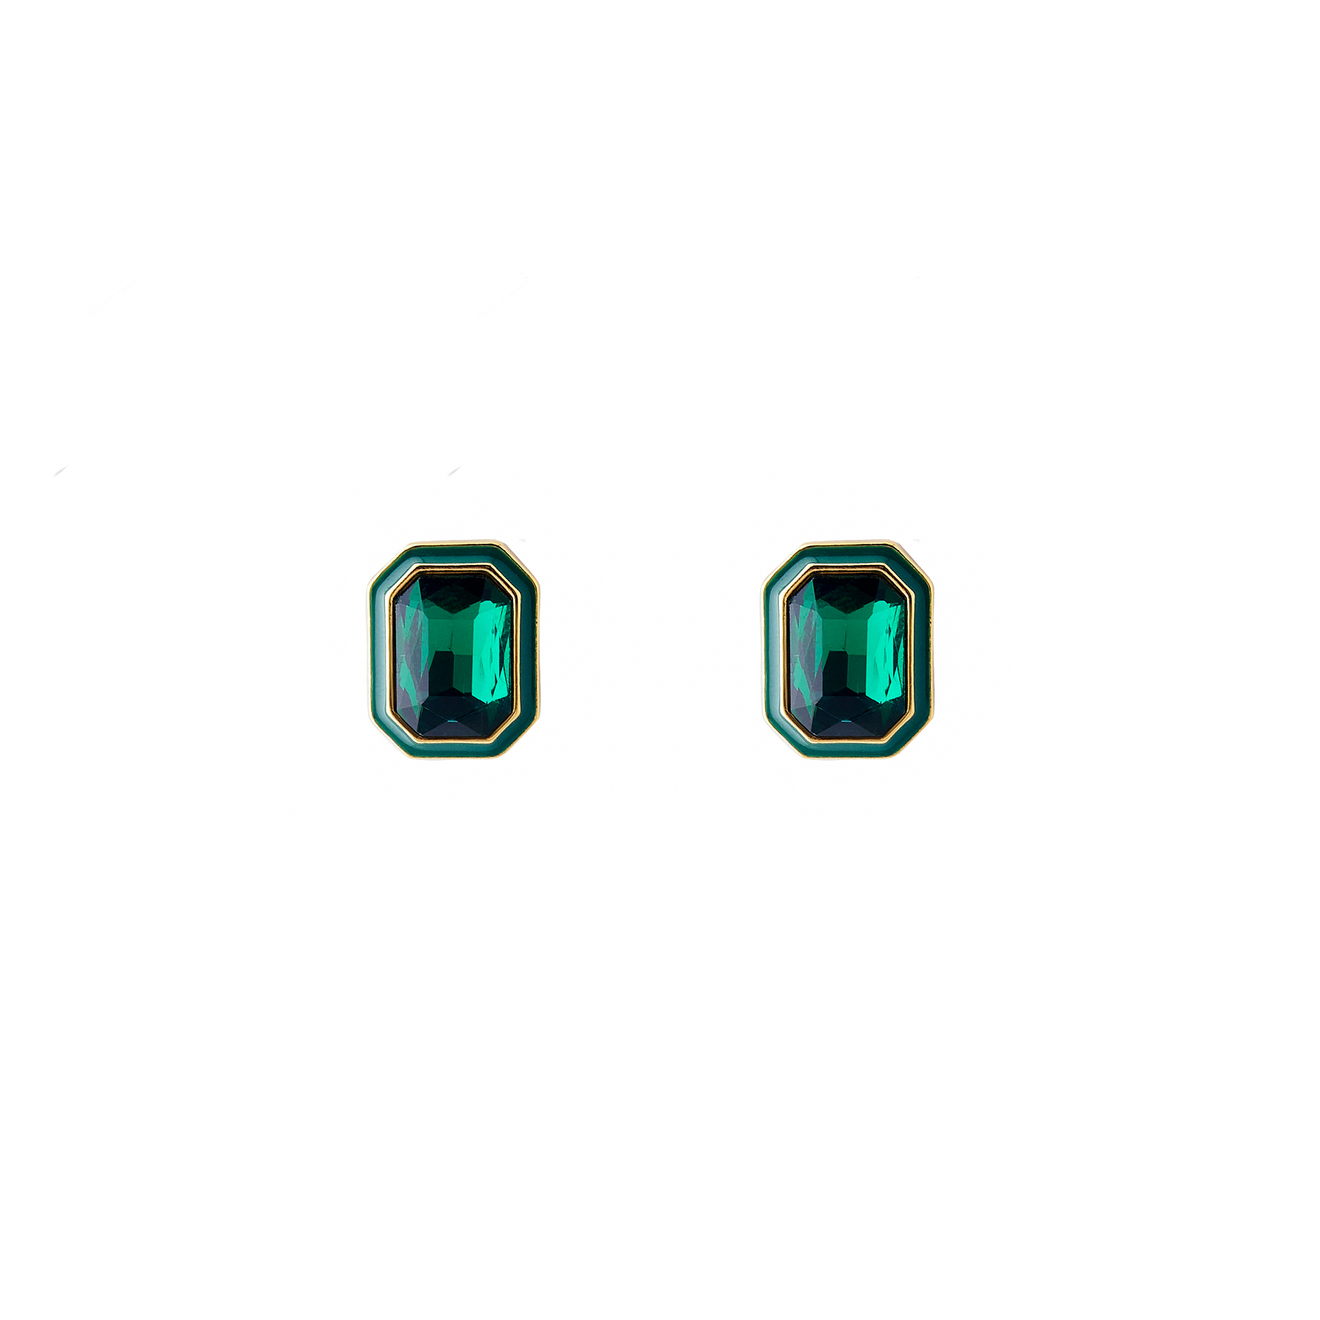 Herald Percy Крупные золотистые серьги с зелеными кристаллами и зеленой эмалью herald percy золотистые серьги с красными кристаллами и красной эмалью